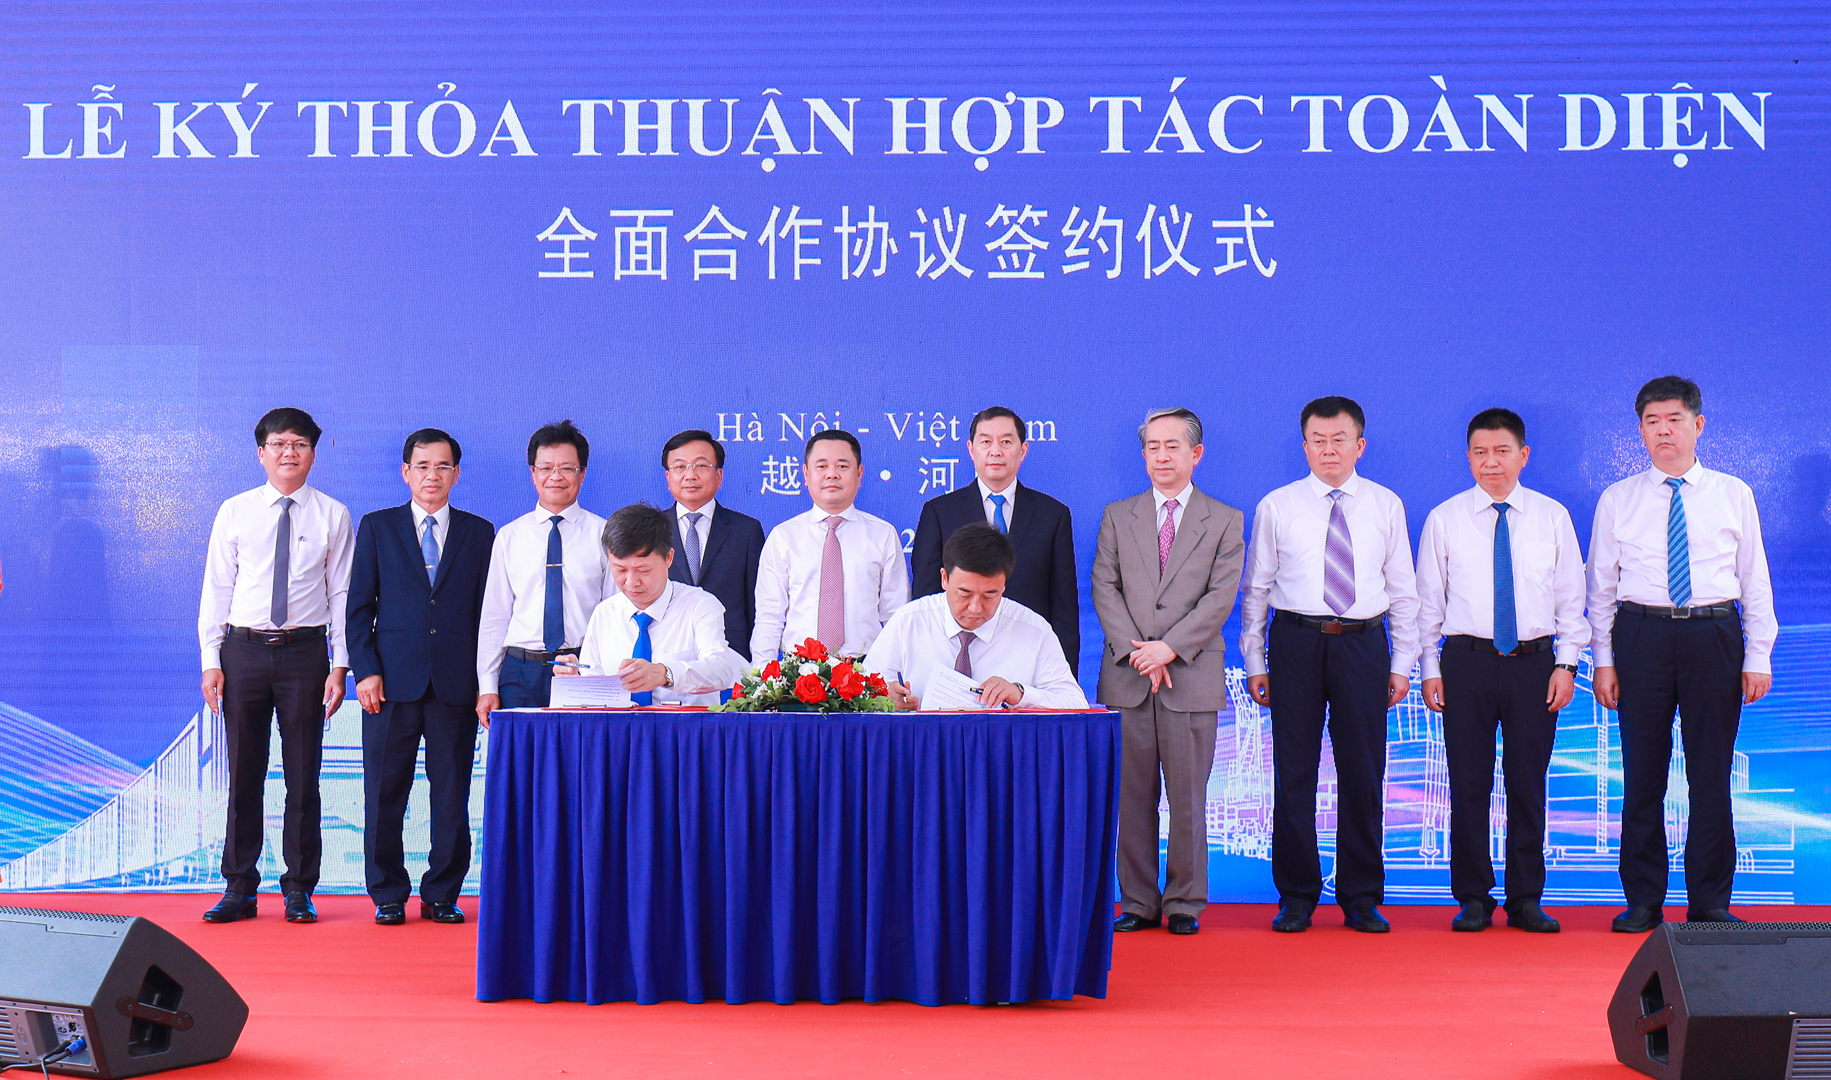 Lãnh đạo Công ty CP Vận tải và Thương mại đường sắt và lãnh đạo Công ty Hữu hạn vật lưu Lục Cảng quốc tế Thạch Gia Trang ký thỏa thuận hợp tác toàn diện.